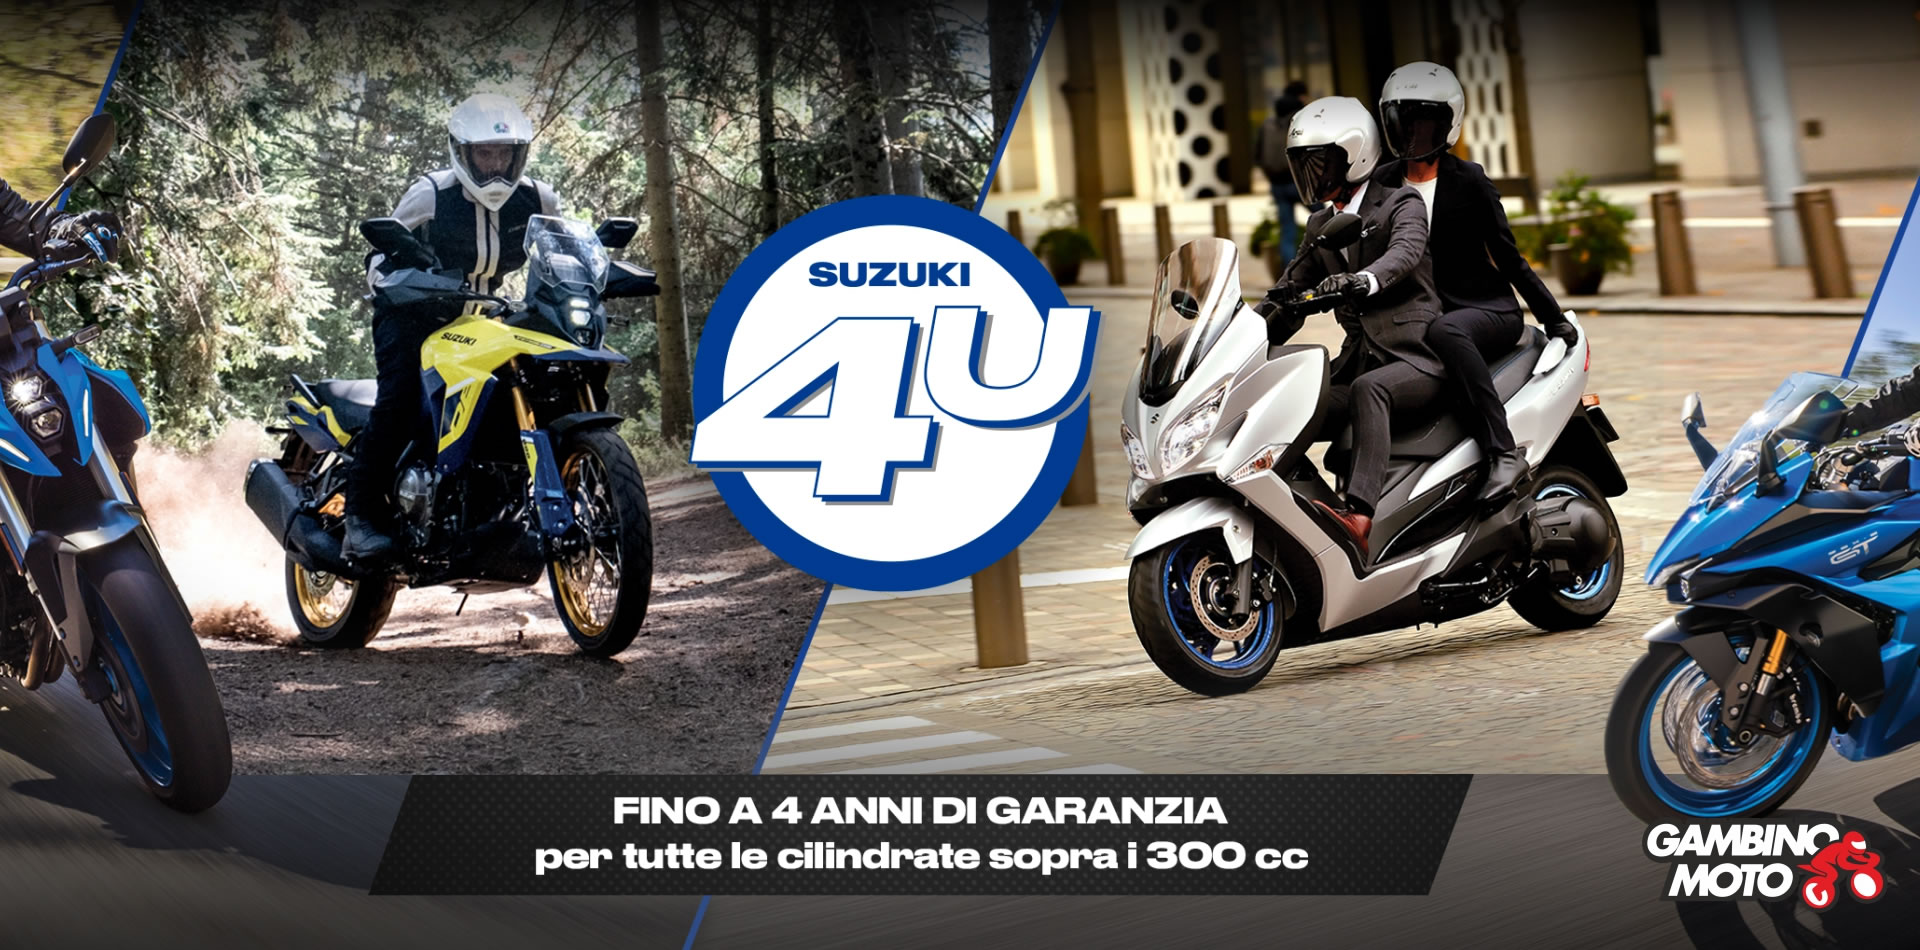 Gambino Moto, concessionaria ufficiale Suzuki Moto, Sym scooter, Peugeot scooter, accessori e abbigliamento moto